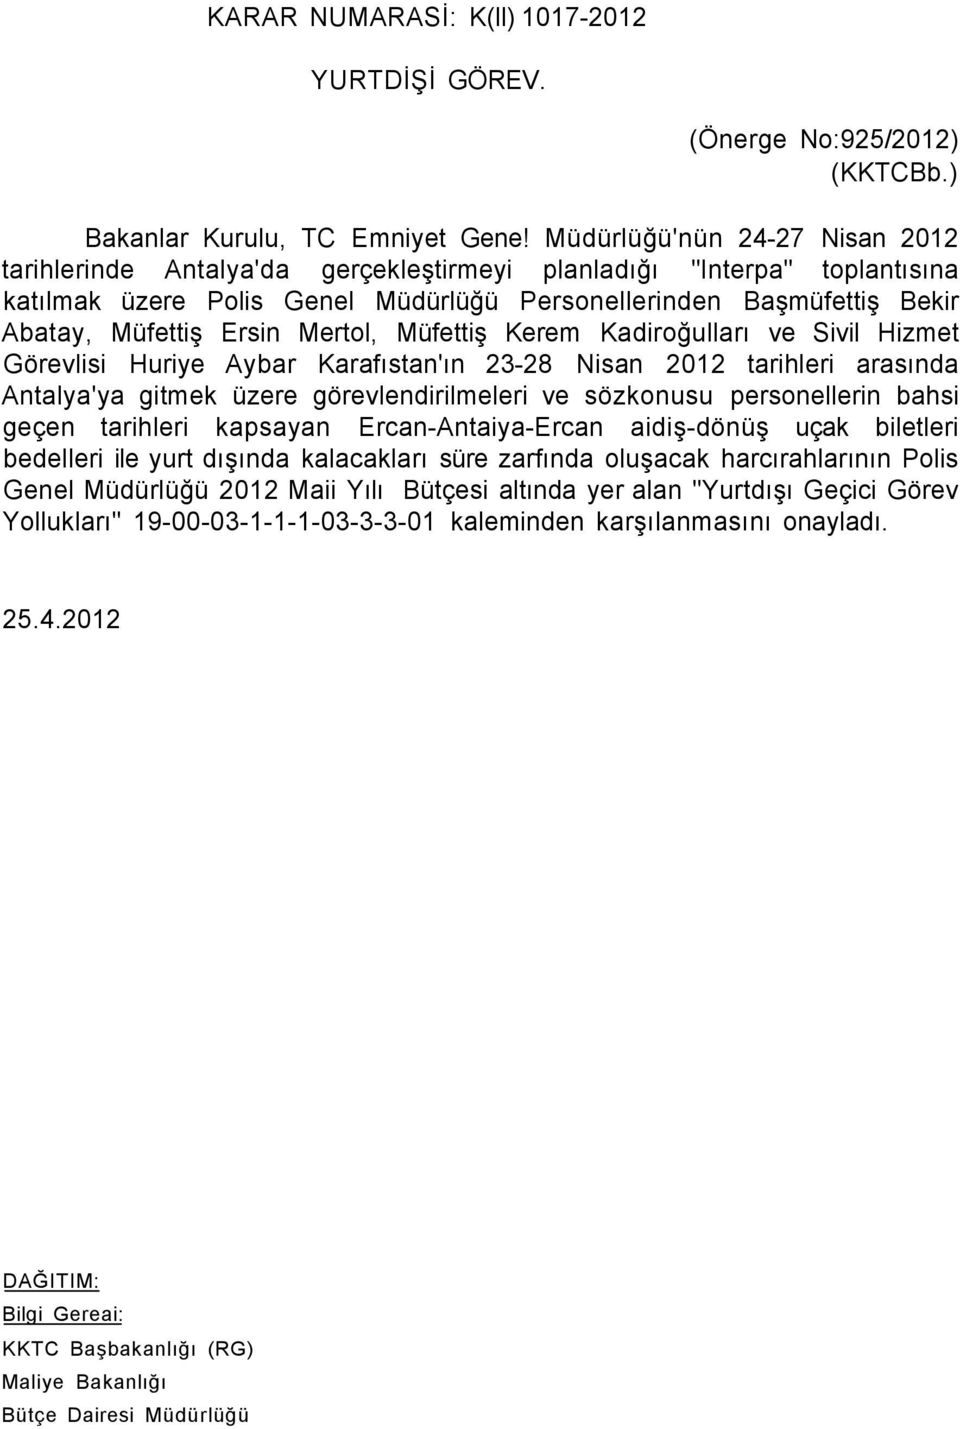 Ersin Mertol, Müfettiş Kerem Kadiroğulları ve Sivil Hizmet Görevlisi Huriye Aybar Karafıstan'ın 23-28 Nisan 2012 tarihleri arasında Antalya'ya gitmek üzere görevlendirilmeleri ve sözkonusu